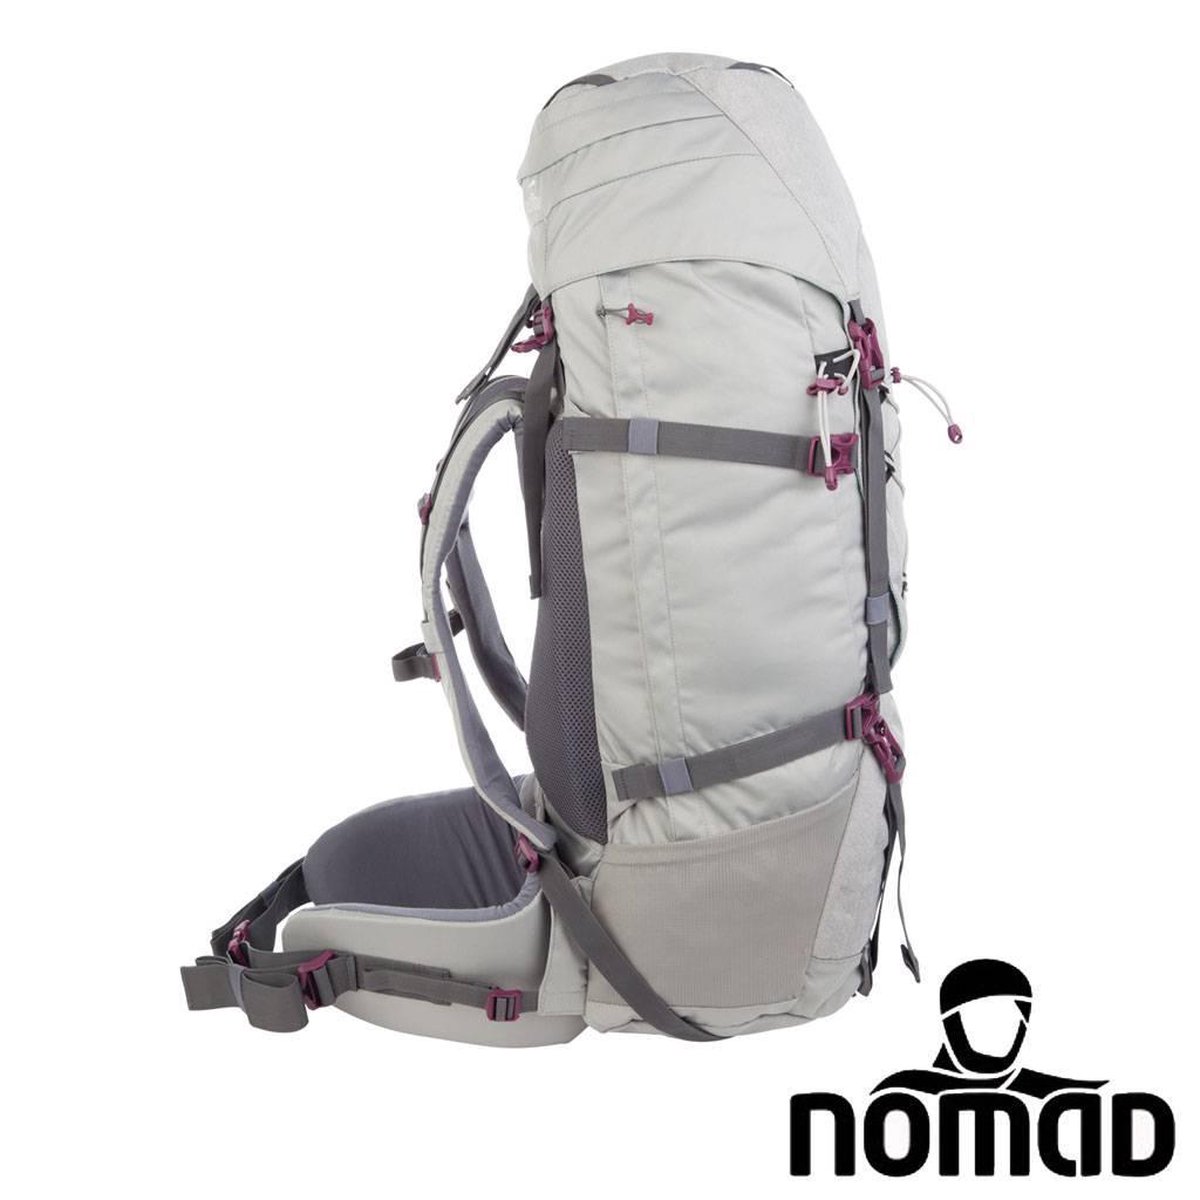 Nomad Sahara 65 Travel Backpack Rugzak - Dames - 65L - Mist Grey | bol.com